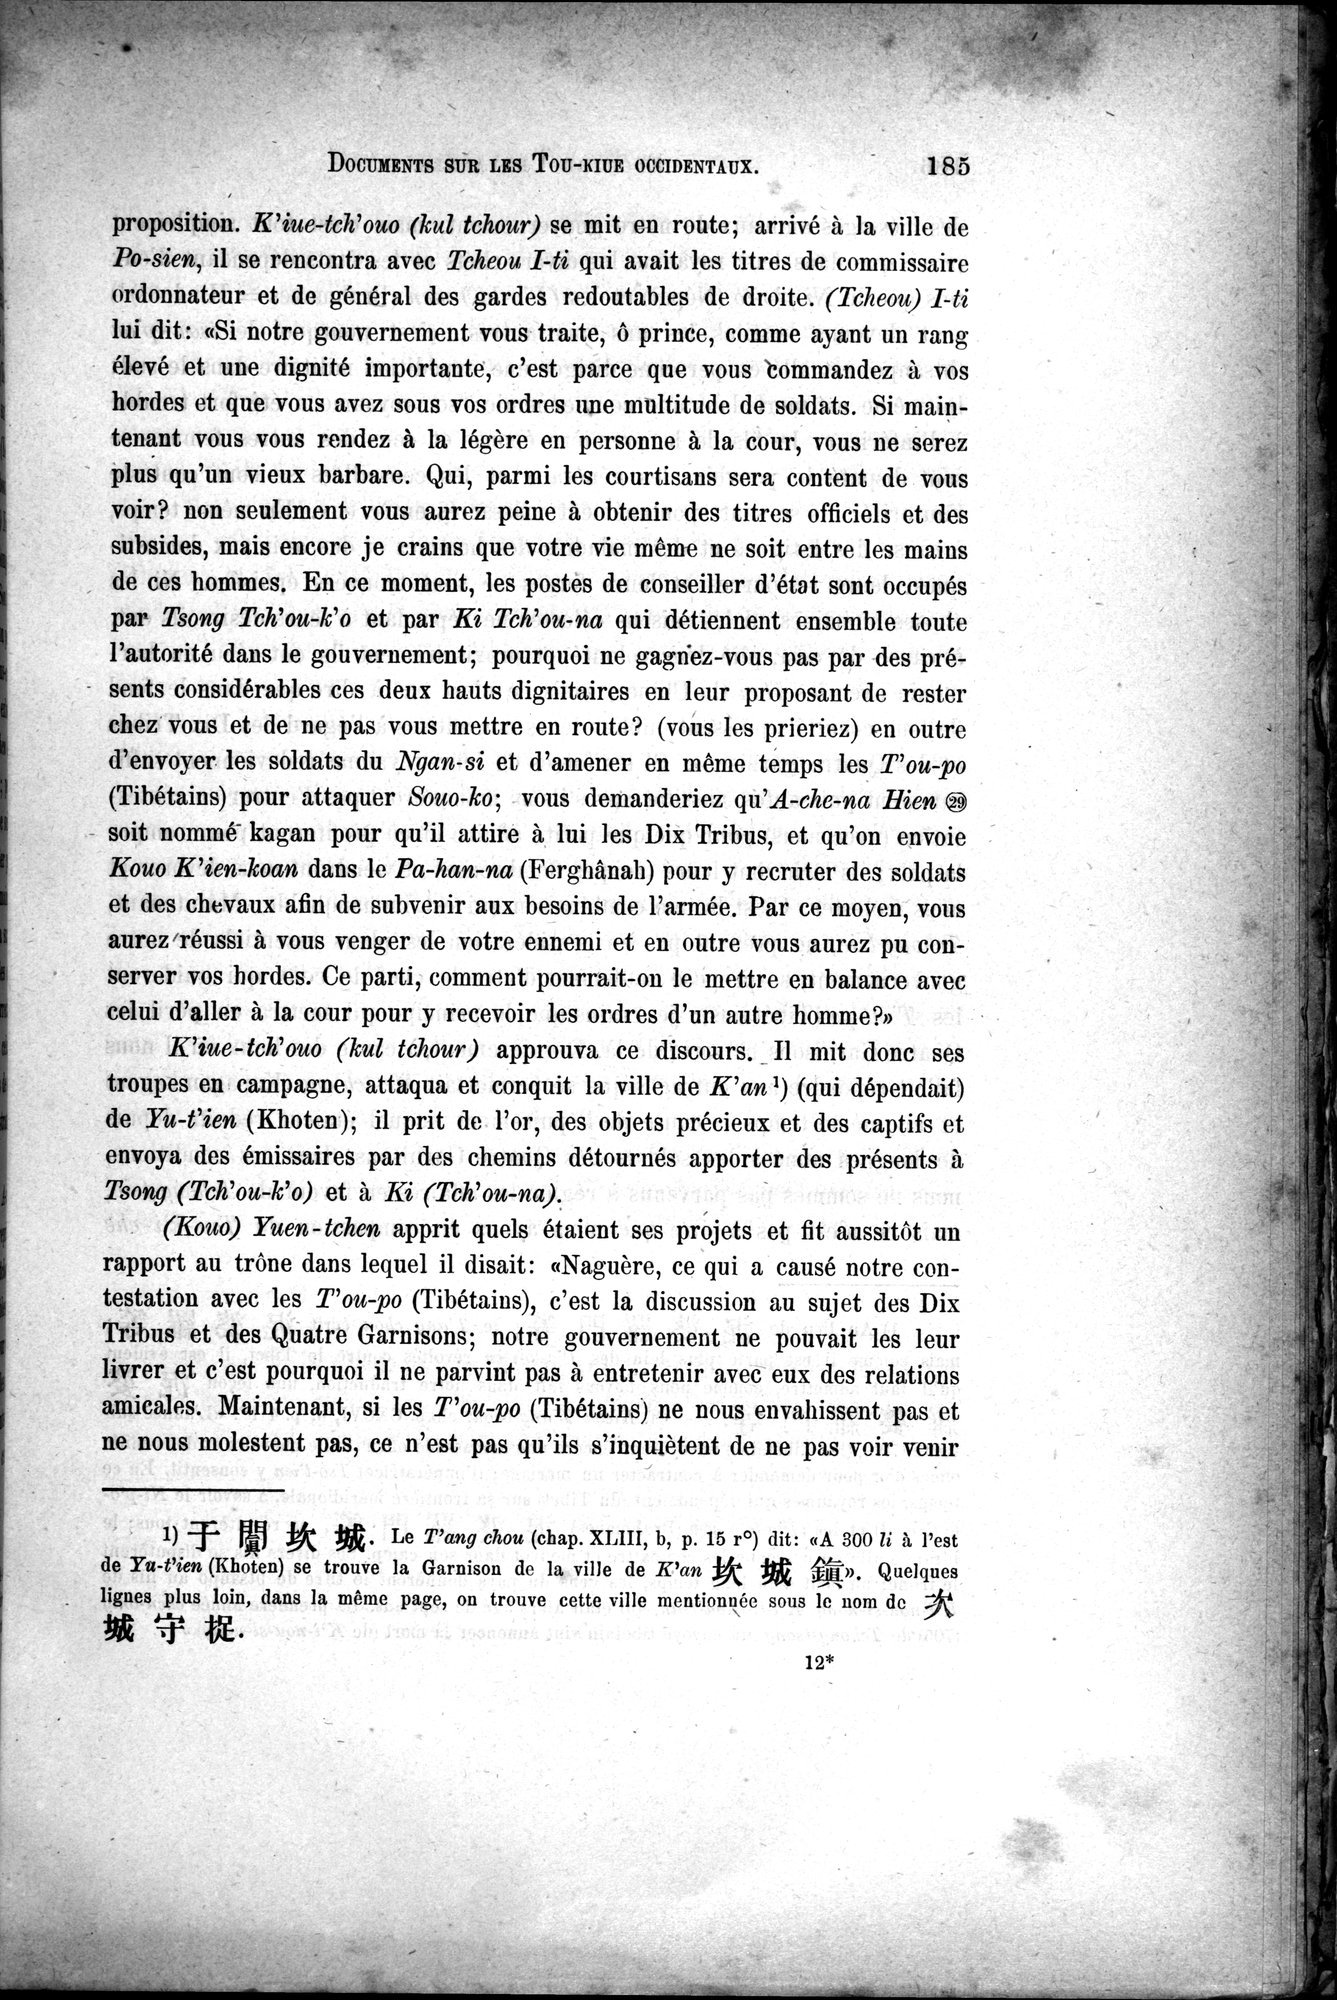 Documents sur les Tou-kiue (Turcs) occidentaux : vol.1 / Page 195 (Grayscale High Resolution Image)